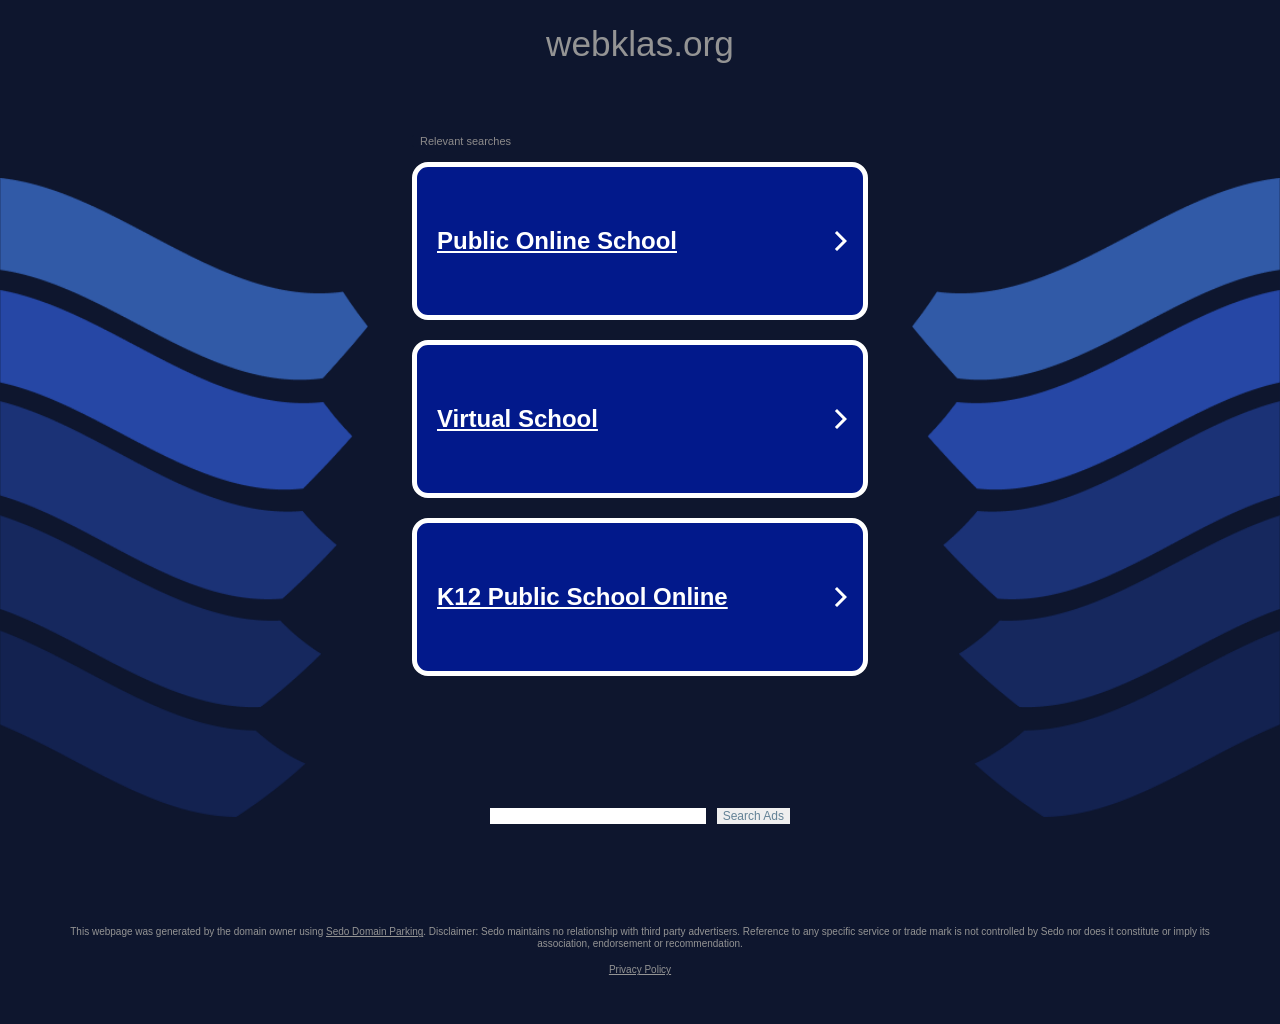 webklas.org